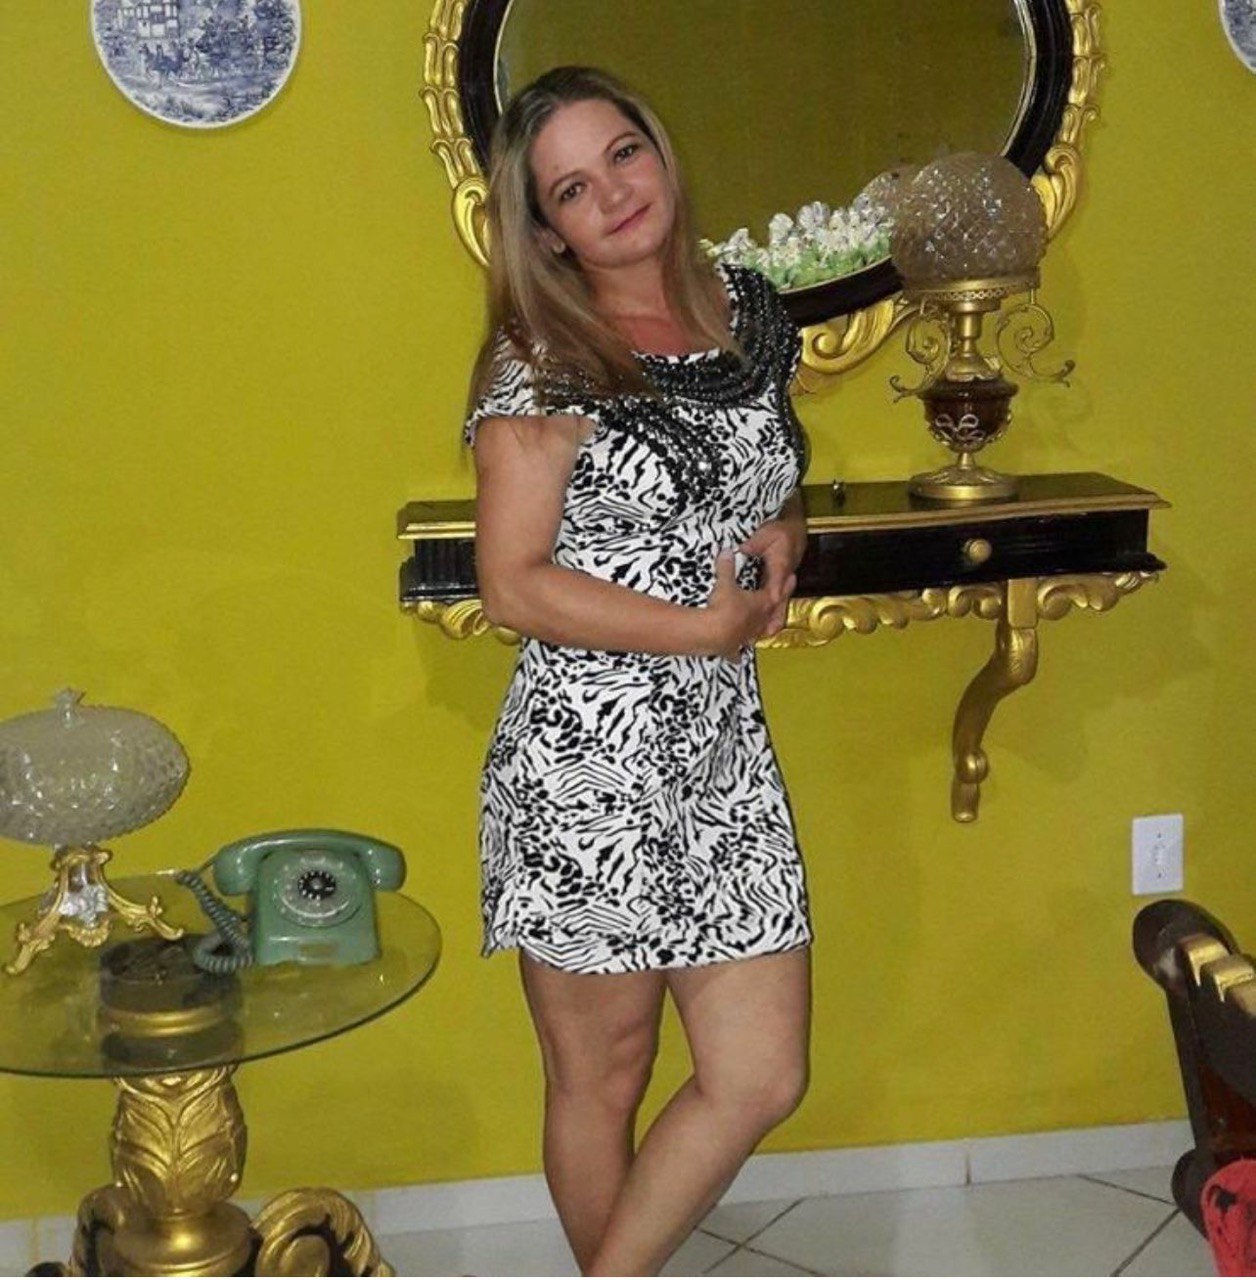 Mulher, acusada de liderar organização criminosa de vendas de terrenos ilegais, mora em mansão de luxo e piscina em João Pessoa